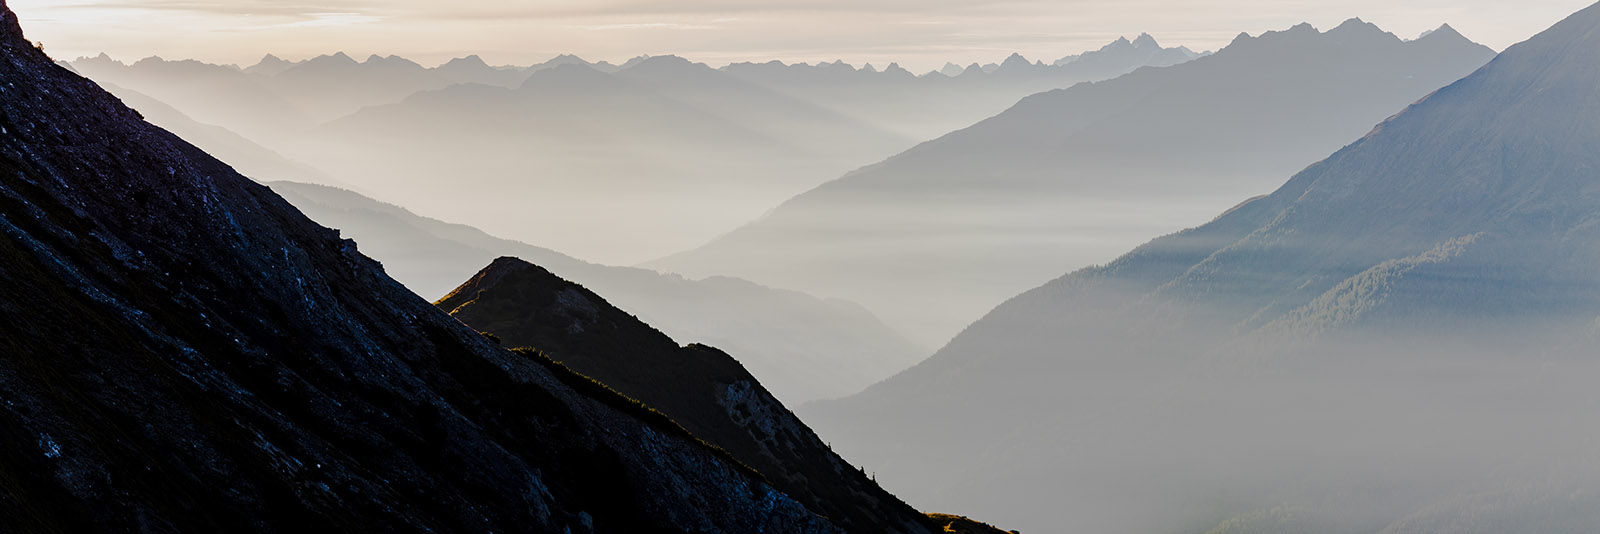  Sunrise on the Arlberg